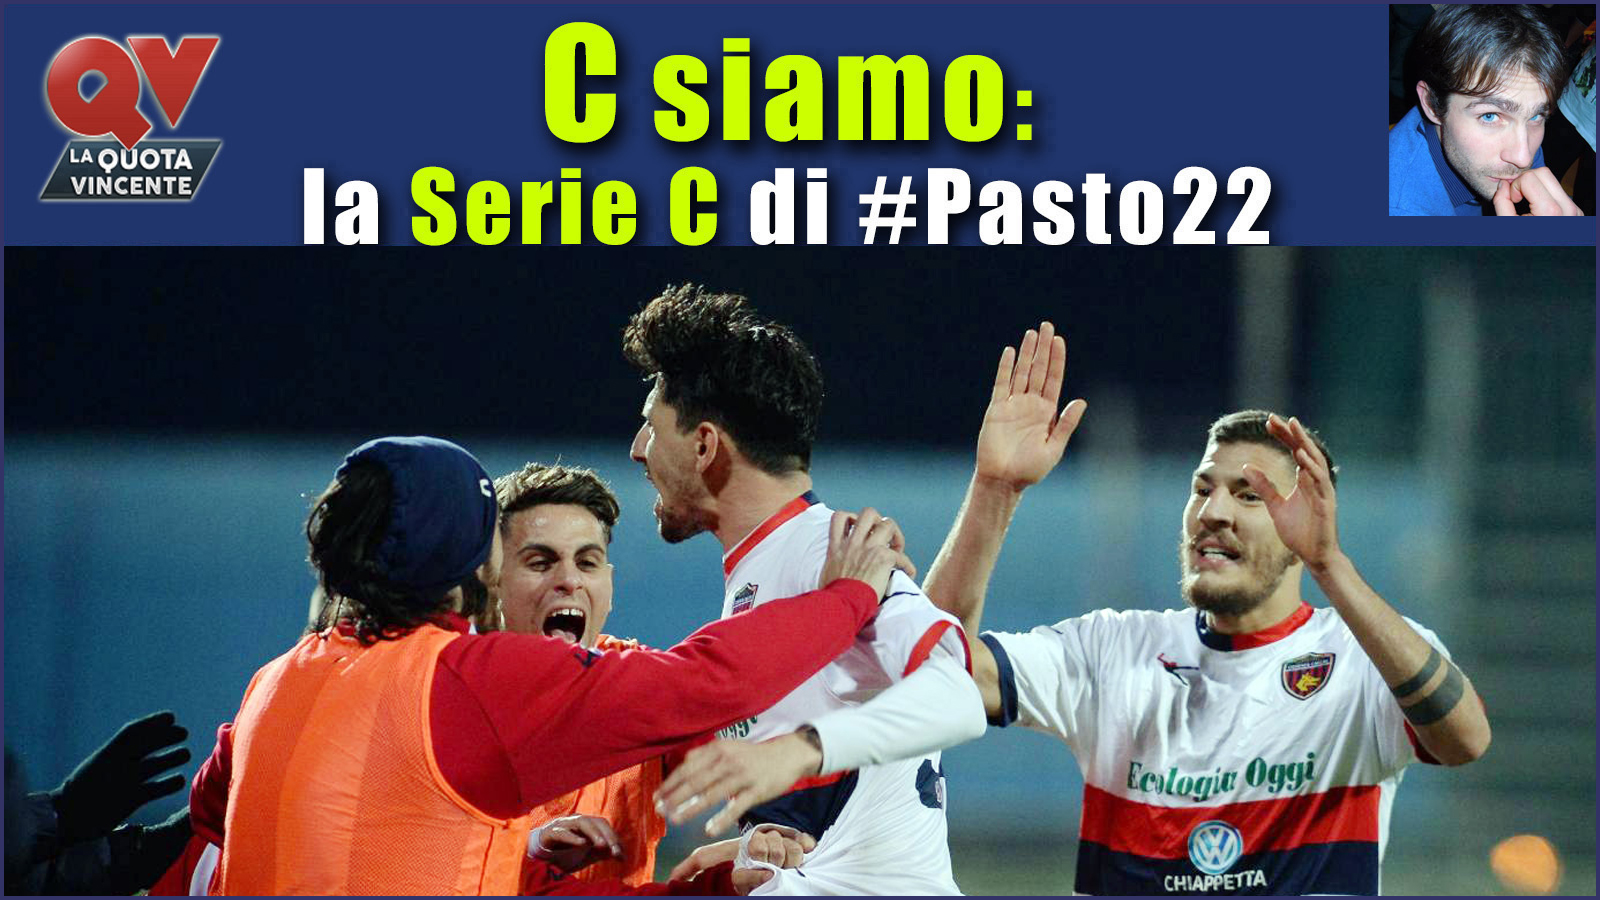 Pronostici Serie C domenica 21 gennaio: #Csiamo, il blog di #Pasto22